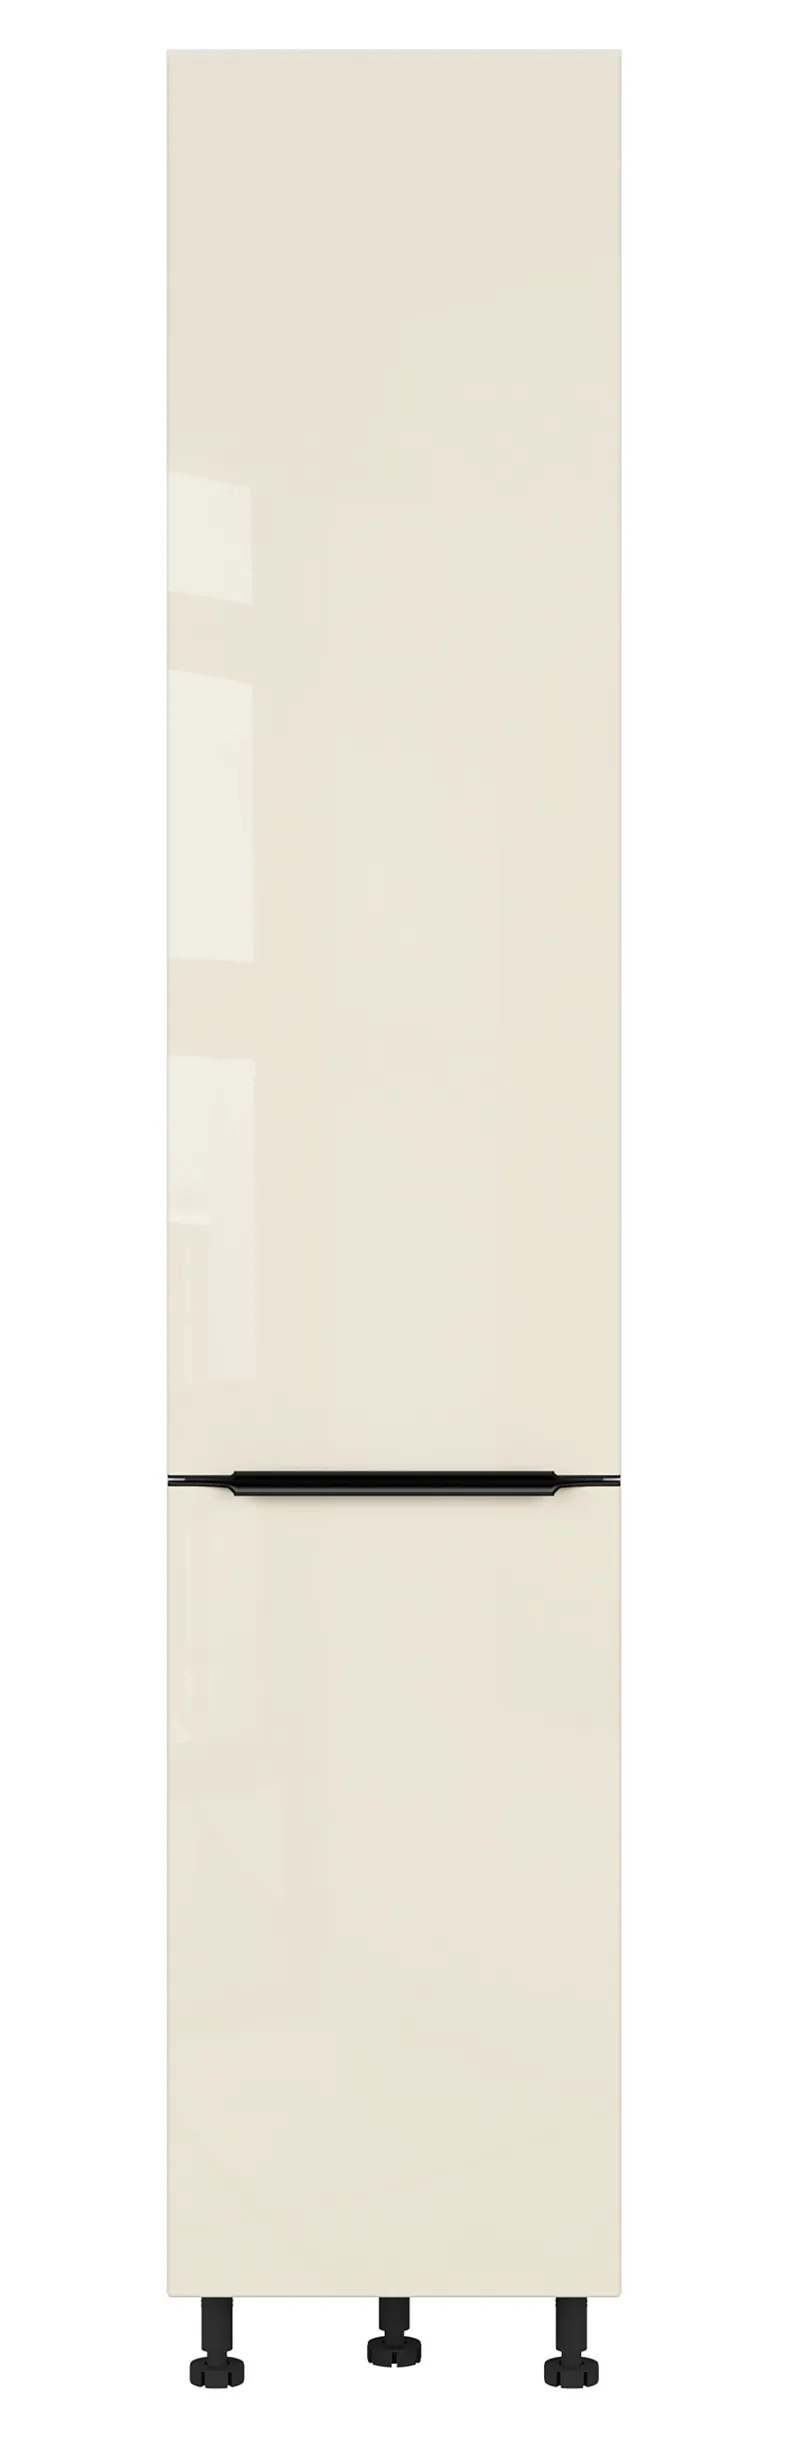 BRW Кухонный шкаф Sole L6 высотой 40 см с корзиной для груза магнолия жемчуг, альпийский белый/жемчуг магнолии FM_DC_40/207_CC-BAL/MAPE фото №1